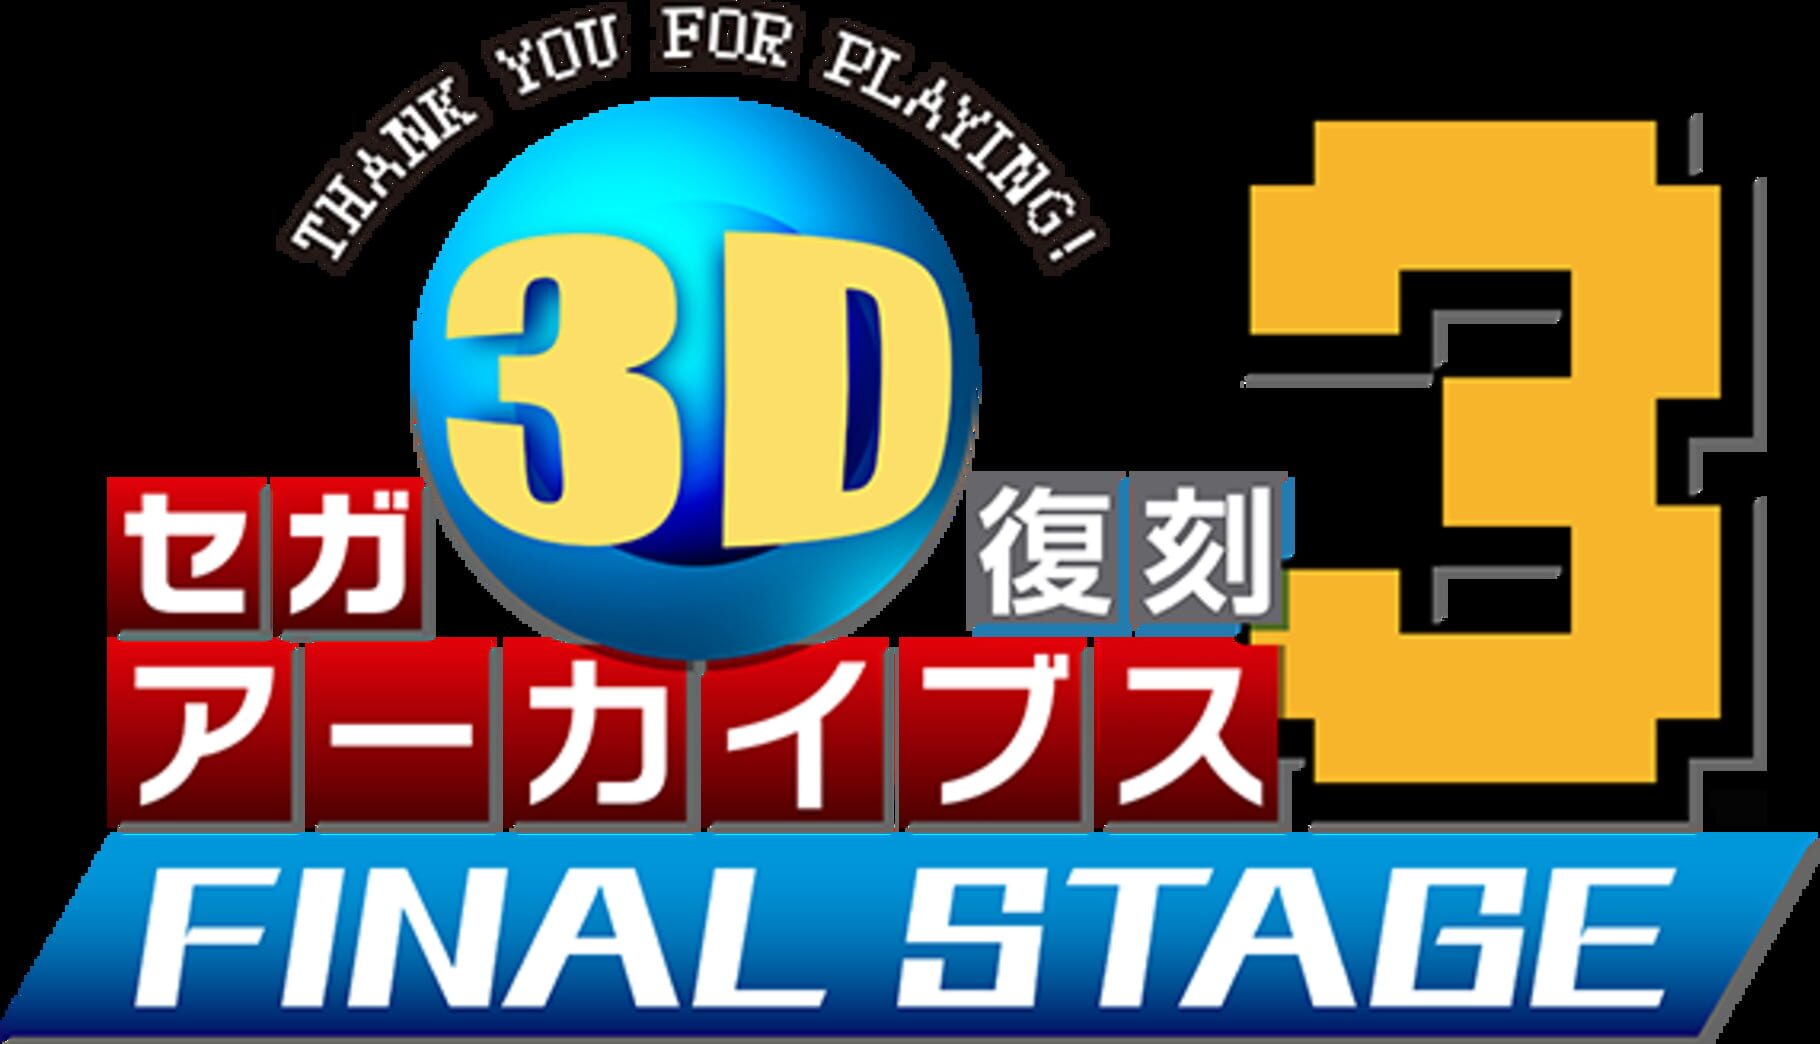 Sega 3D Fukkoku Archives 3: Final Stage Image